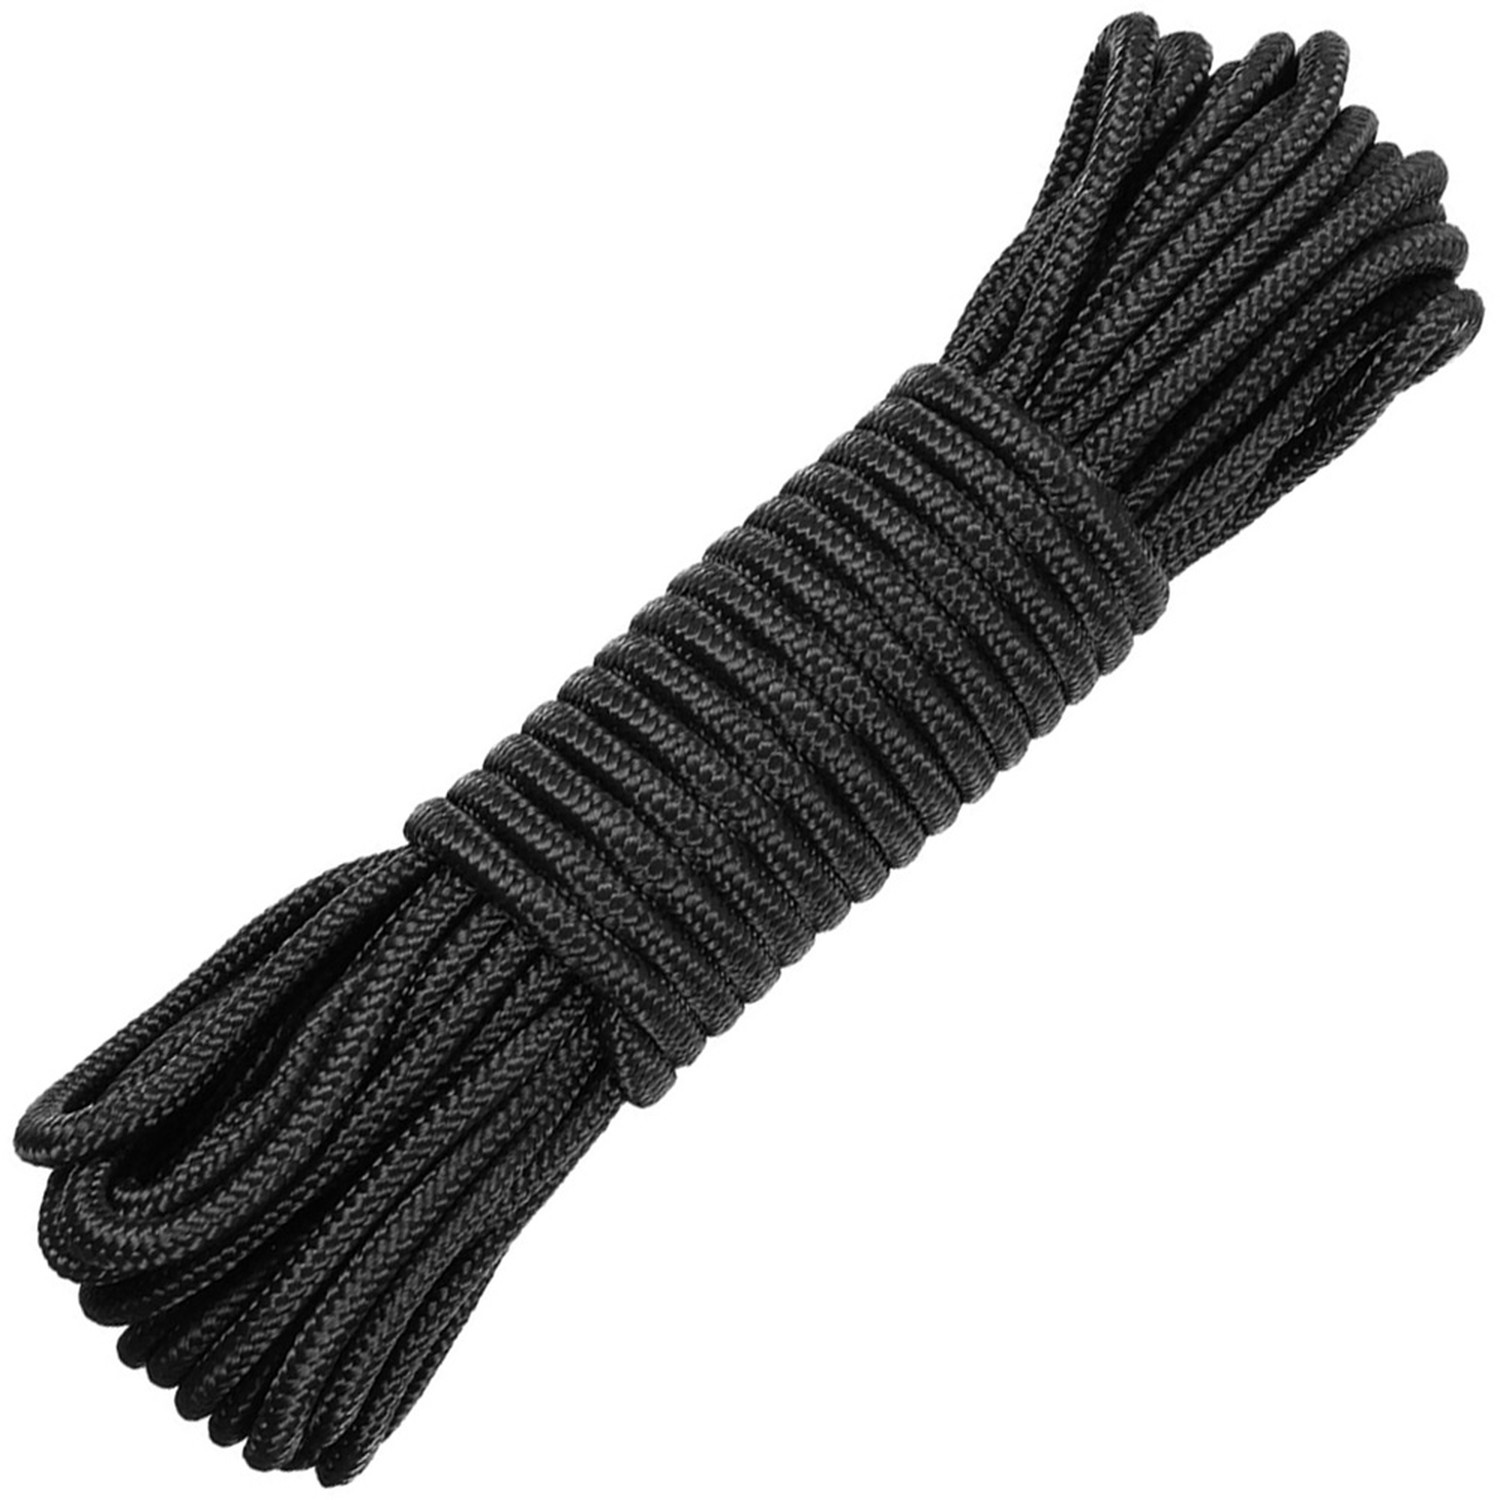 Seil mit 3 mm Durchmesser in Schwarz